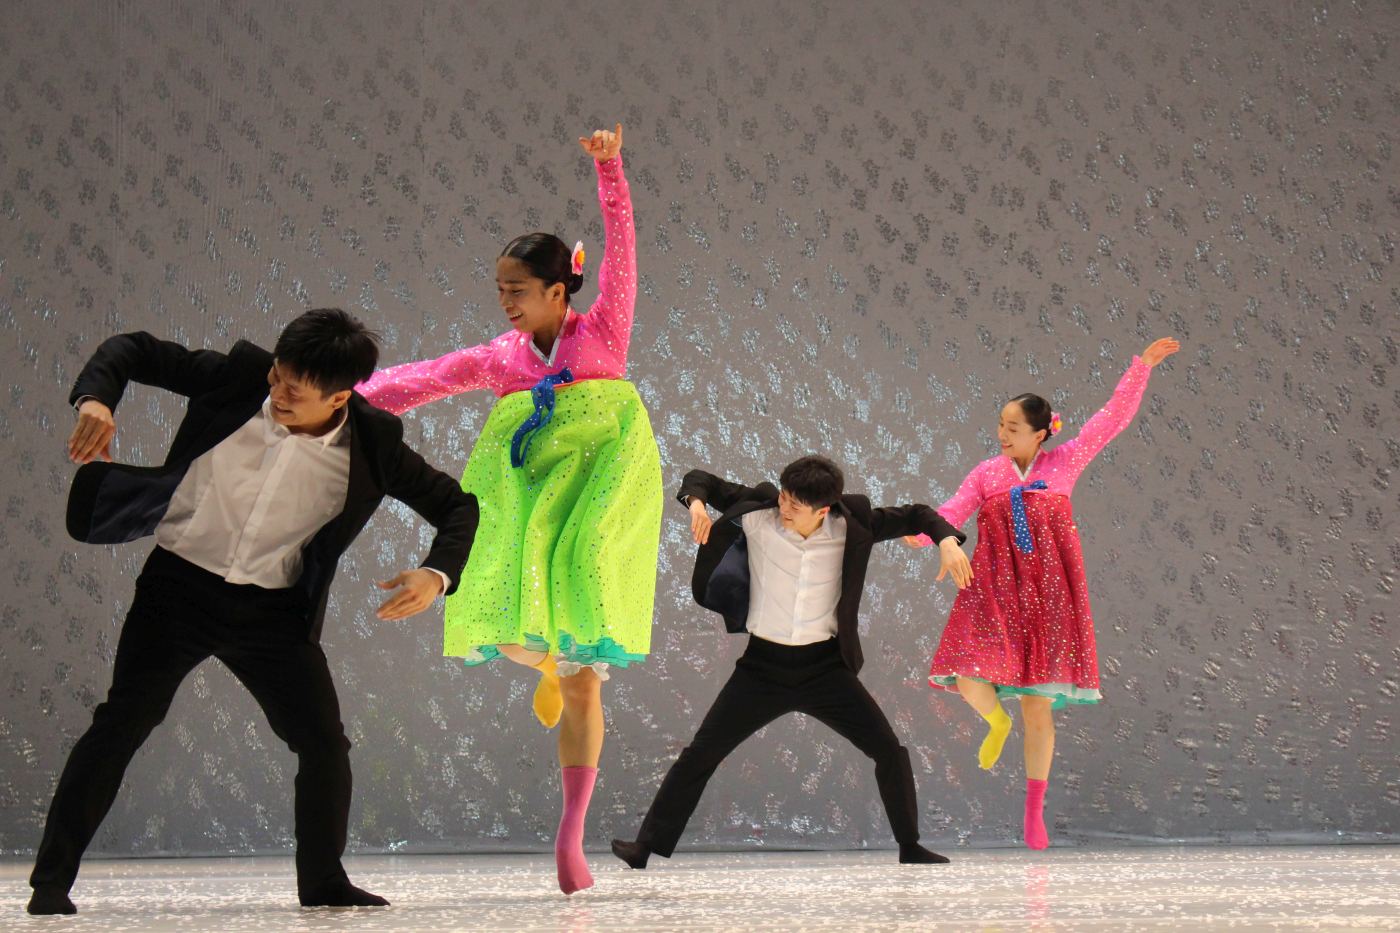  5. H.Nam, J.Ha, S.Kim, and J.Shim, “North Korea Dance” by E.-M.Ahn, Eun-Me Ahn Company 2022 © J.-M.Chabot